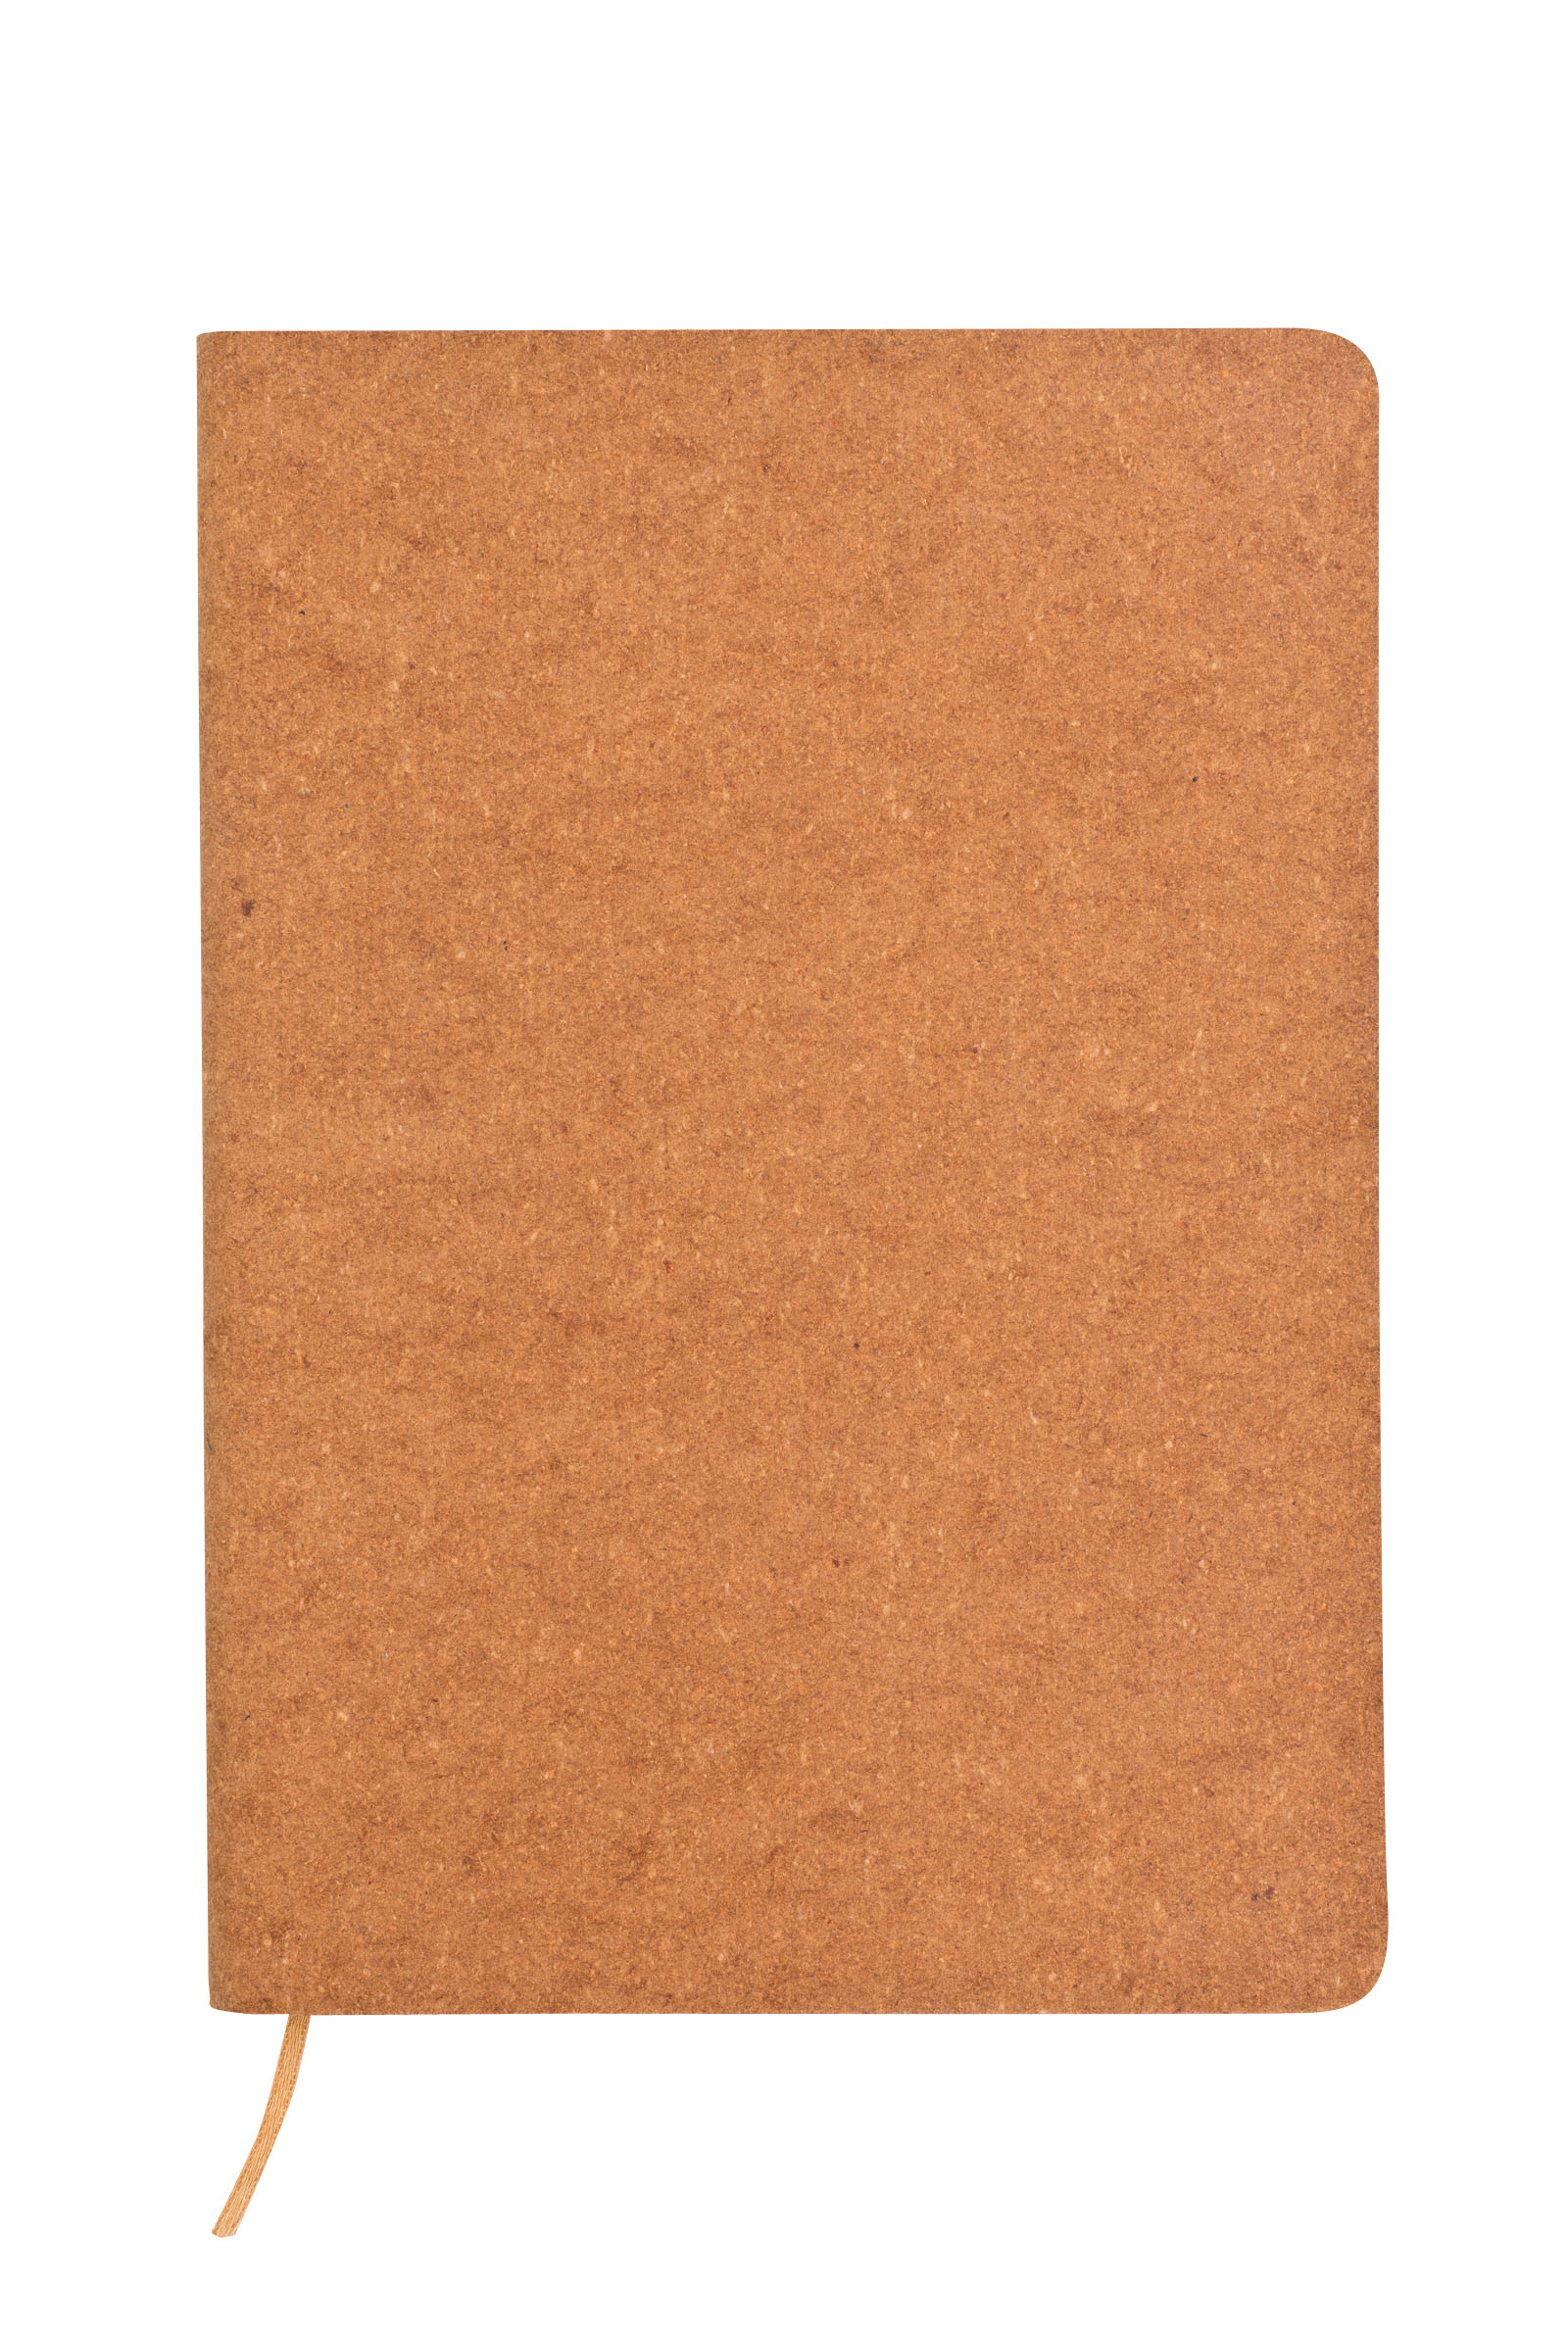 Zápisník s propiskou v krabičce CASTEL, natur